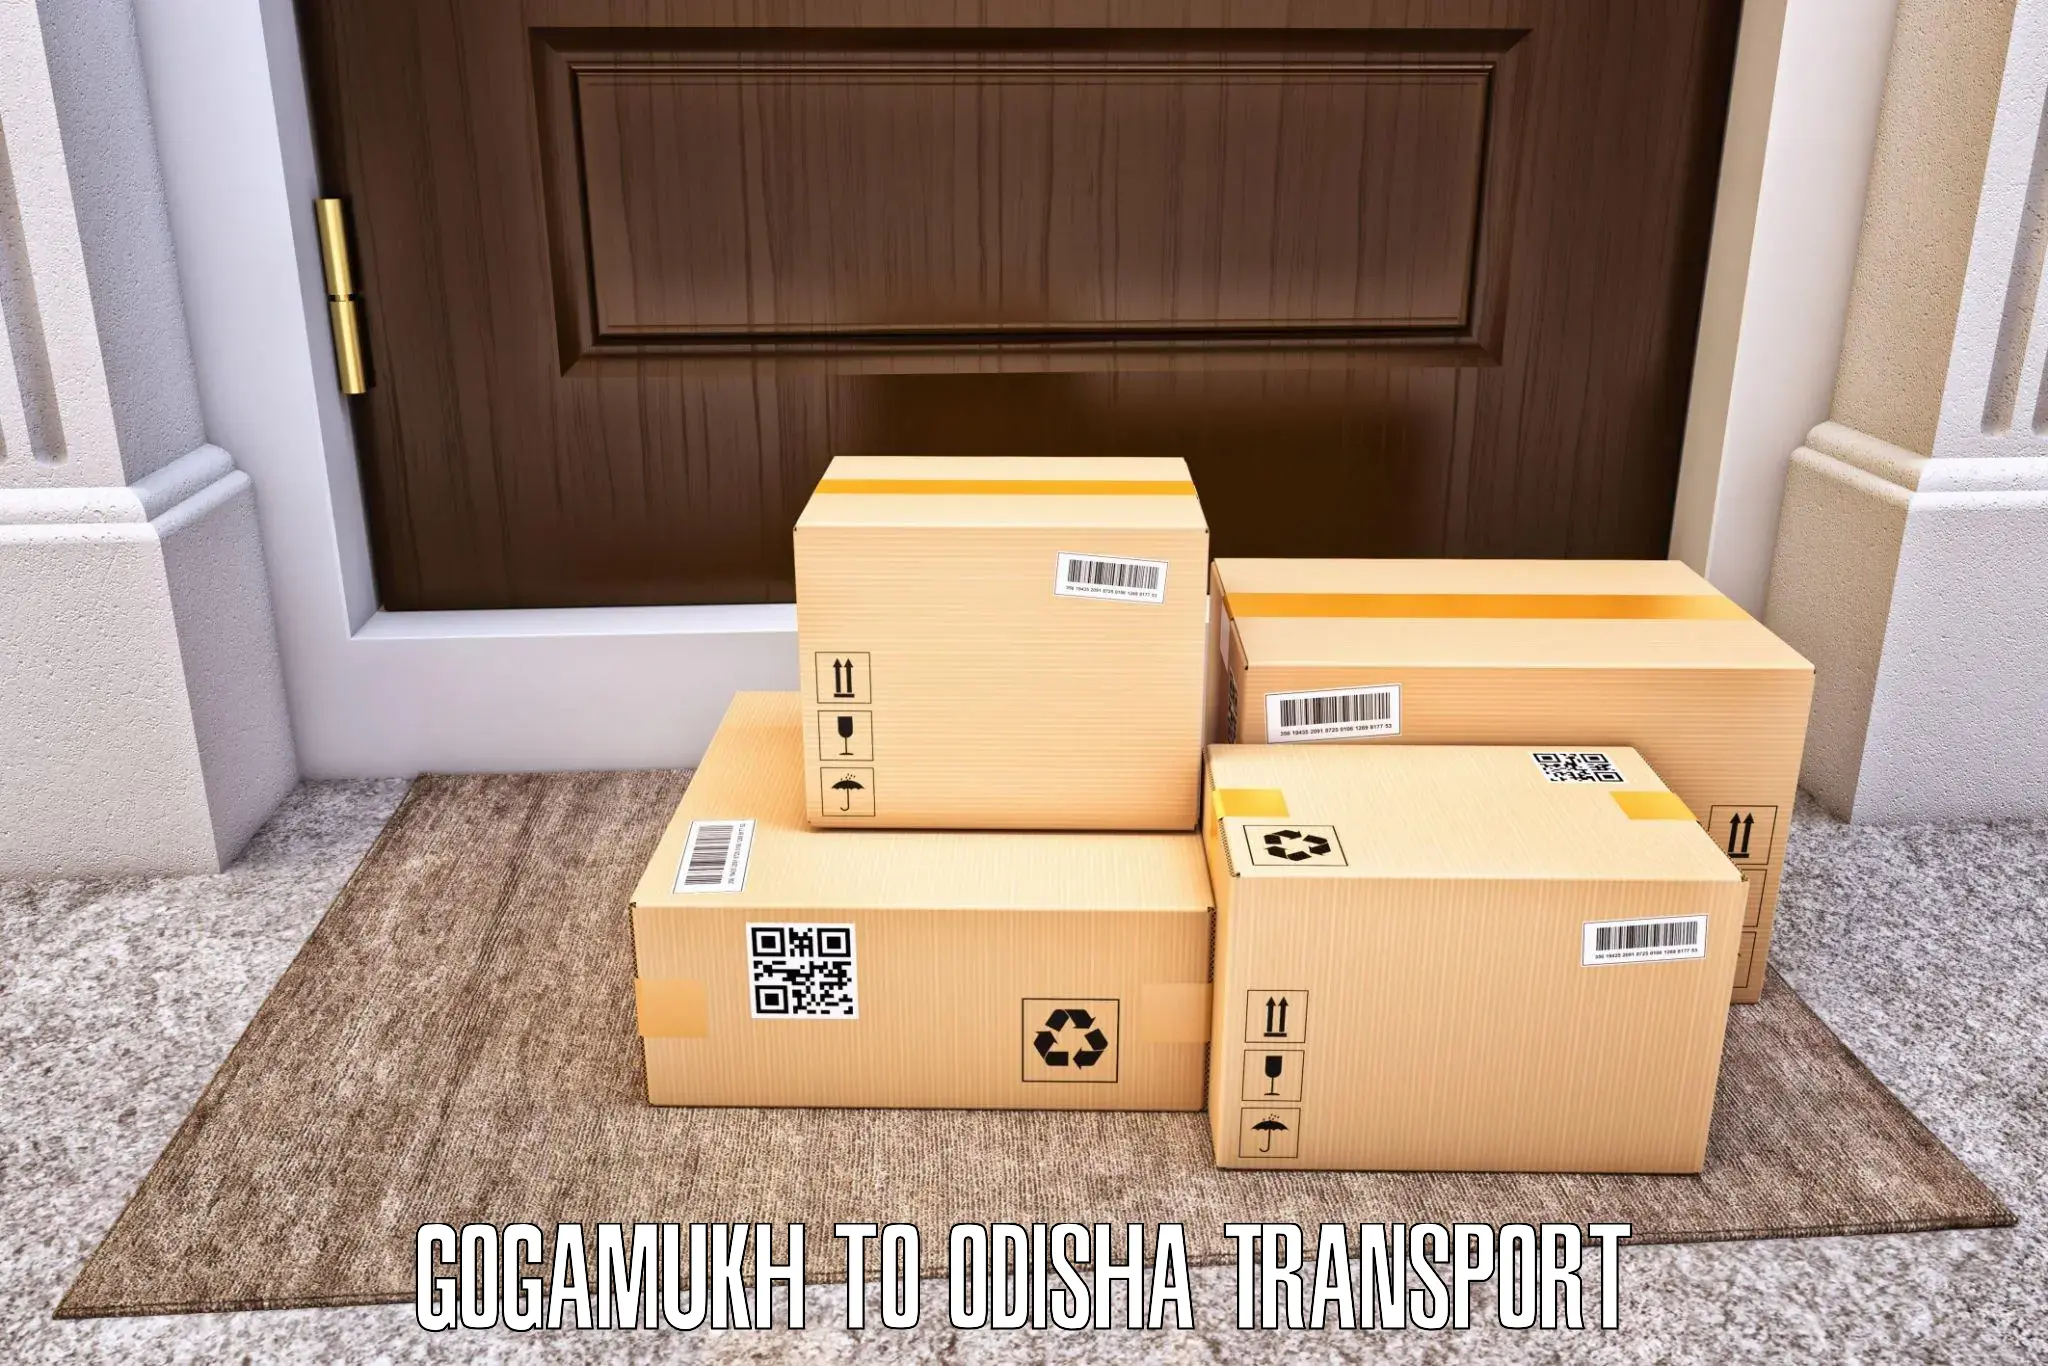 Shipping partner Gogamukh to Bhanjanagar